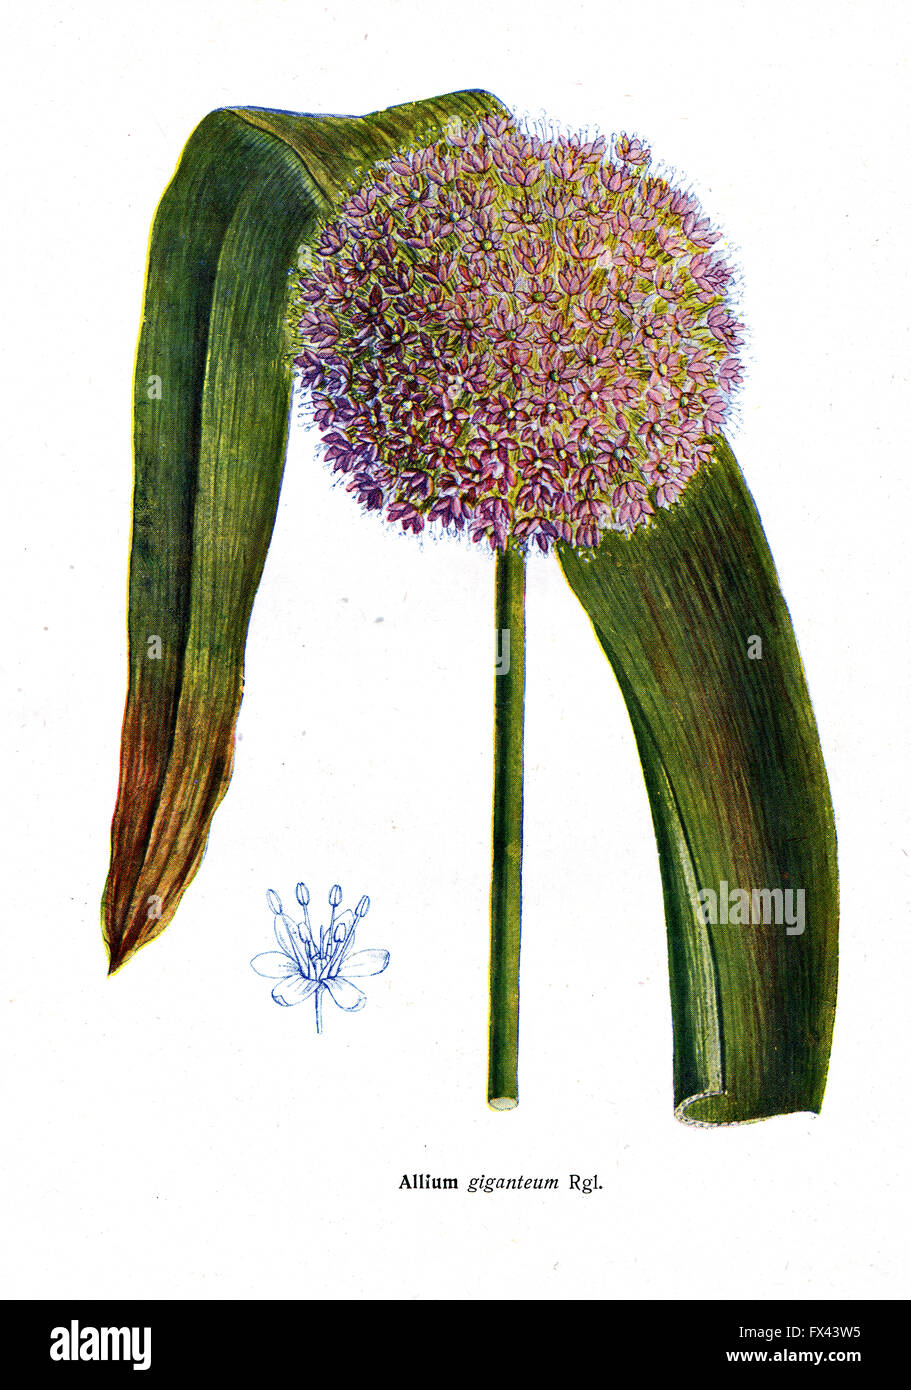 Allium giganteum Rgl - une illustration de l'album "espèce de Condemned bulbes Fleurs de l'Union soviétique", Moscou, 1935 Banque D'Images